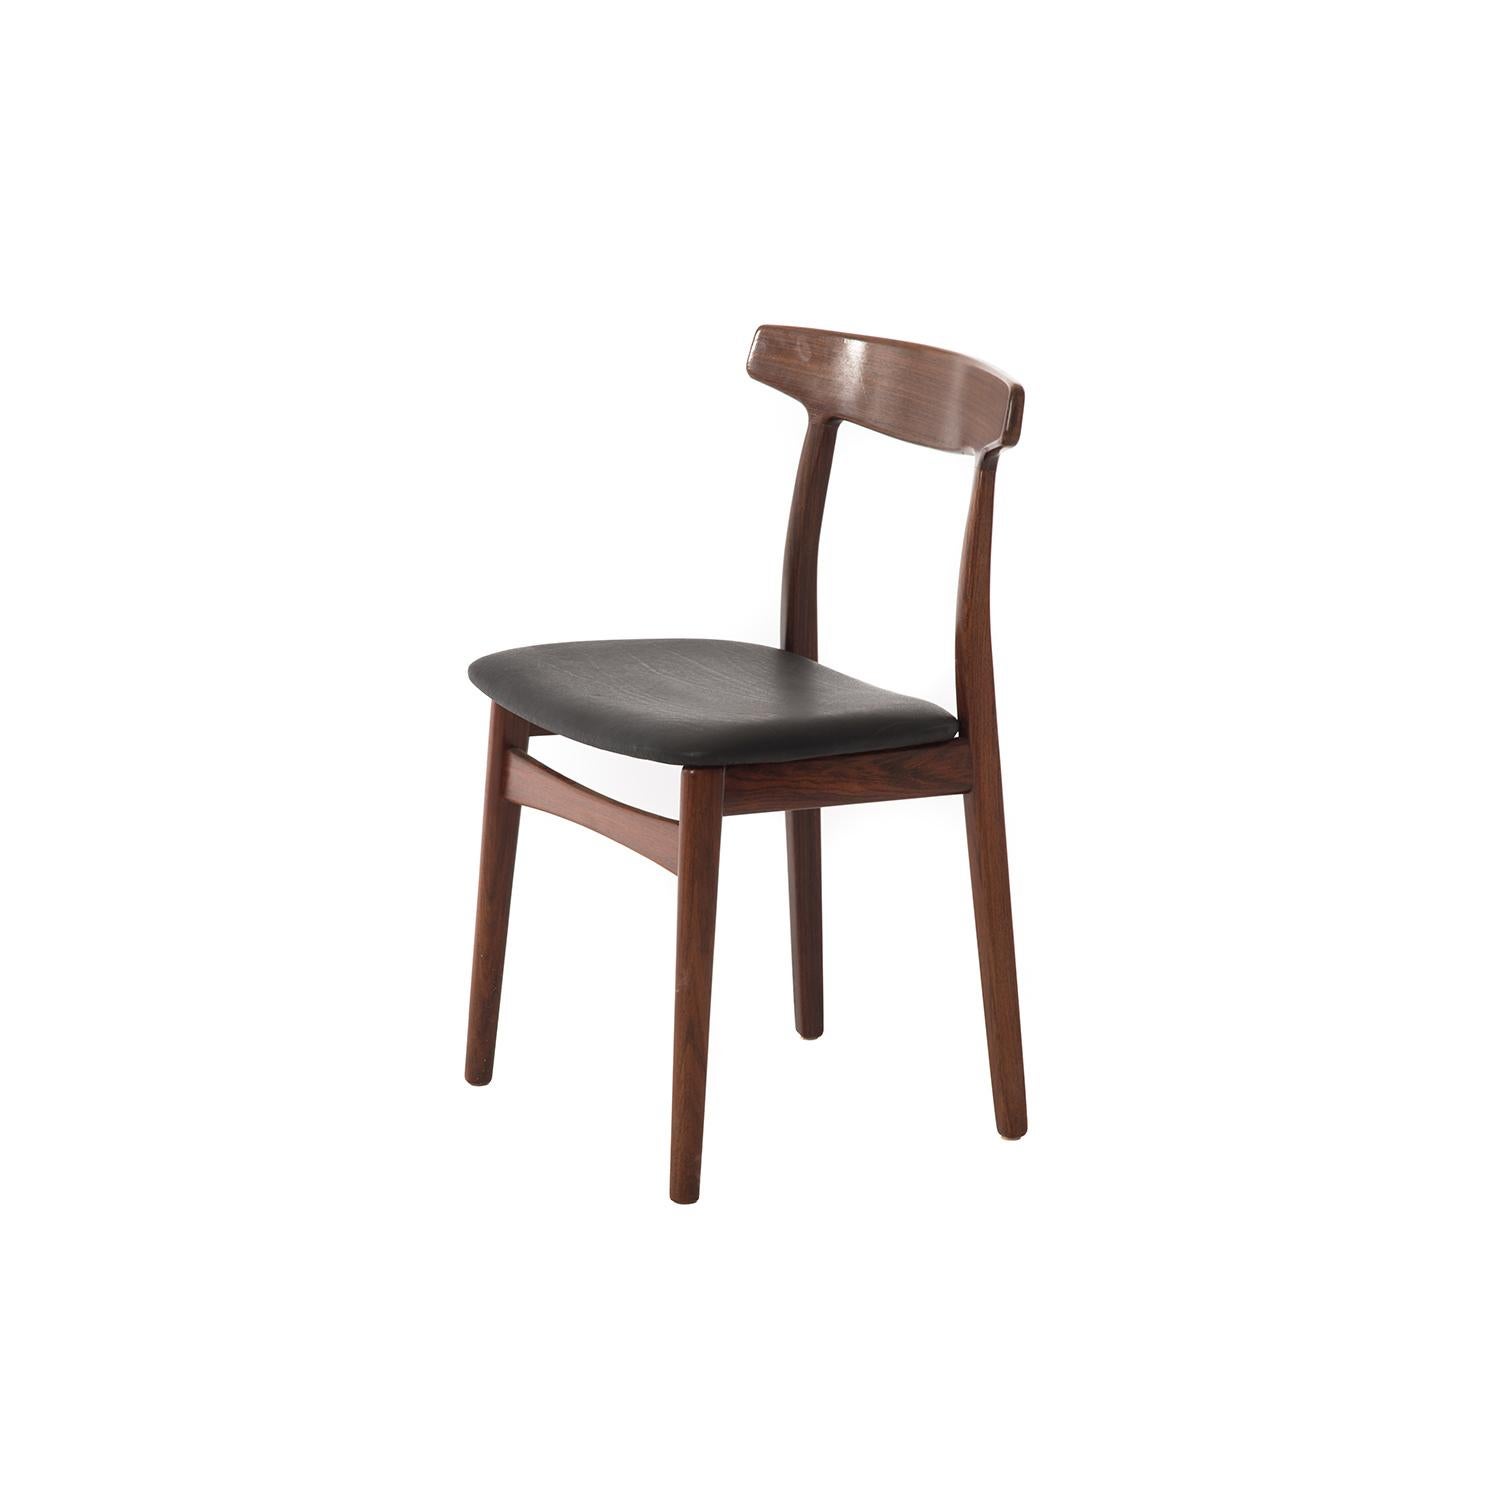 Cette chaise sculpturale apportera de l'élégance à n'importe quelle pièce. Finition laquée semi-brillante avec siège en cuir noir mat. Conçu par H. Kjaernulf.

La restauration professionnelle et compétente de meubles fait partie intégrante de notre